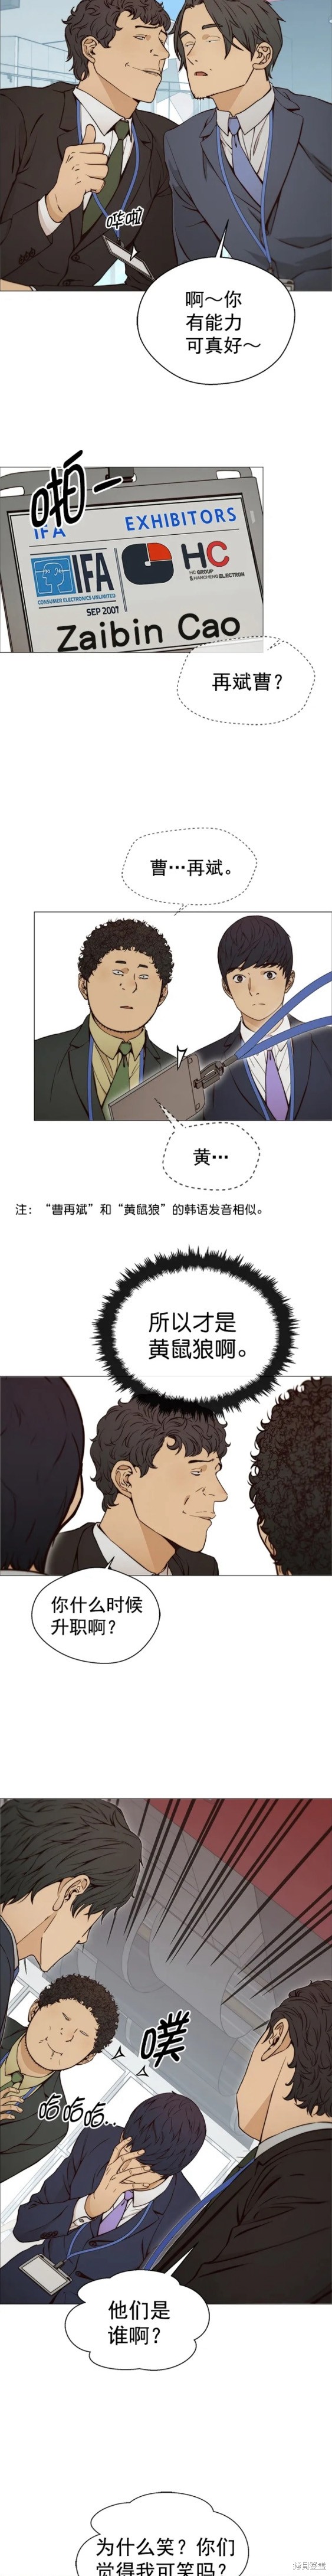 男子汉漫画,第118话11图